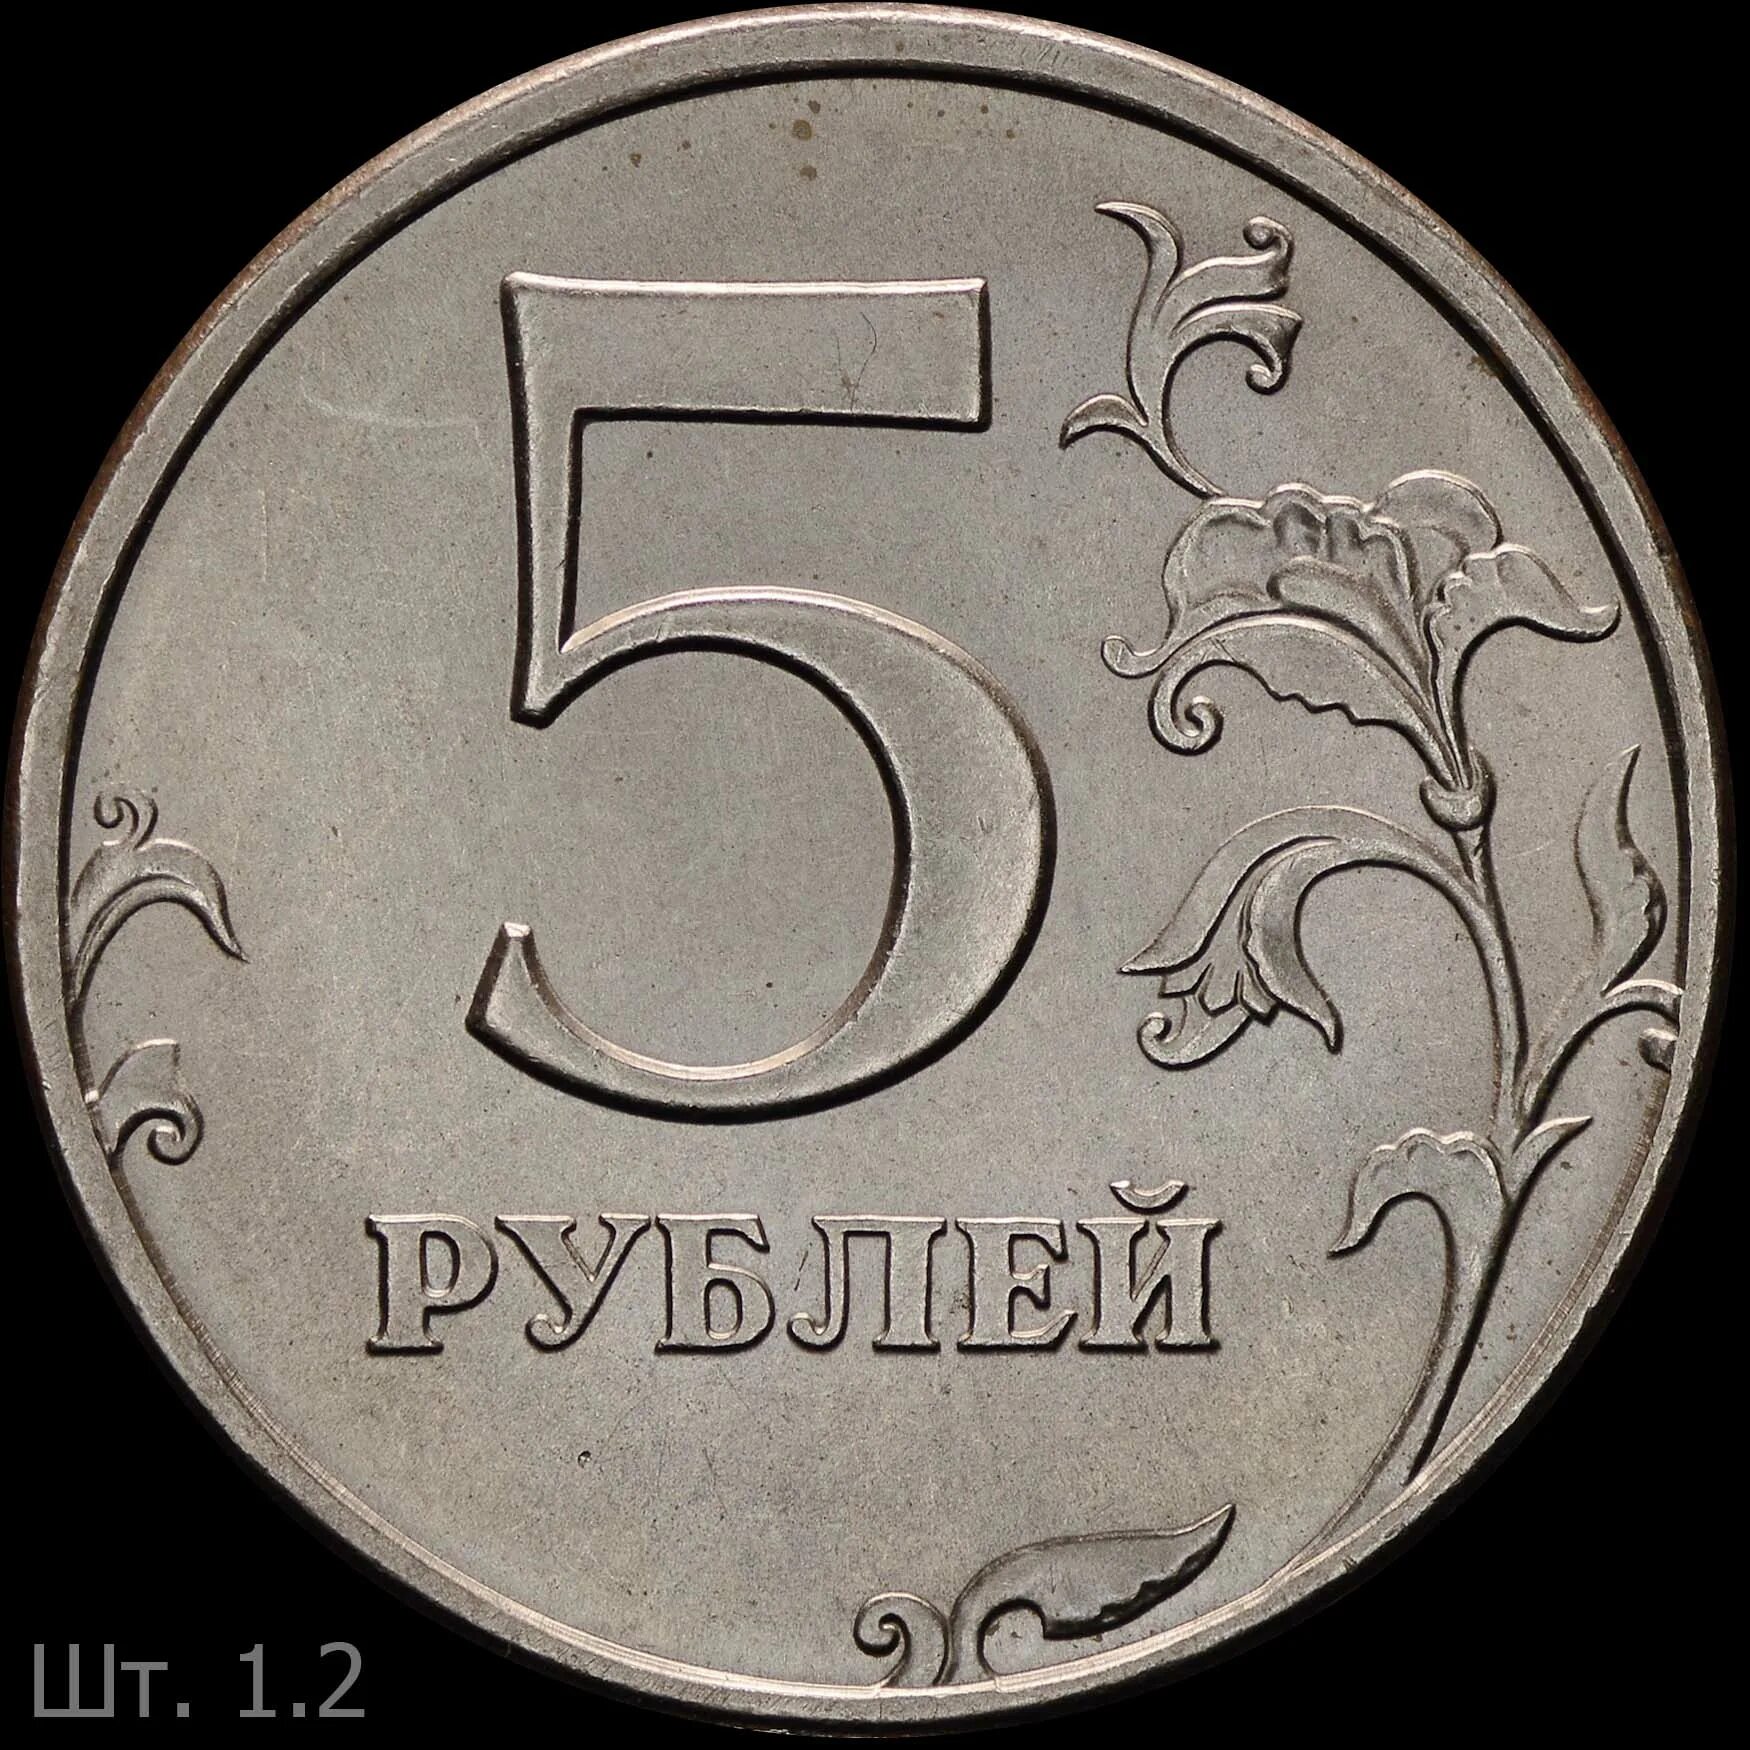 5 Рублей 1997 года СПМД штемпель 2.3. Пять рублей Санкт-Петербургский монетный двор 1997. 5 Рублей 1997 года. Пять рублей 1997 года.